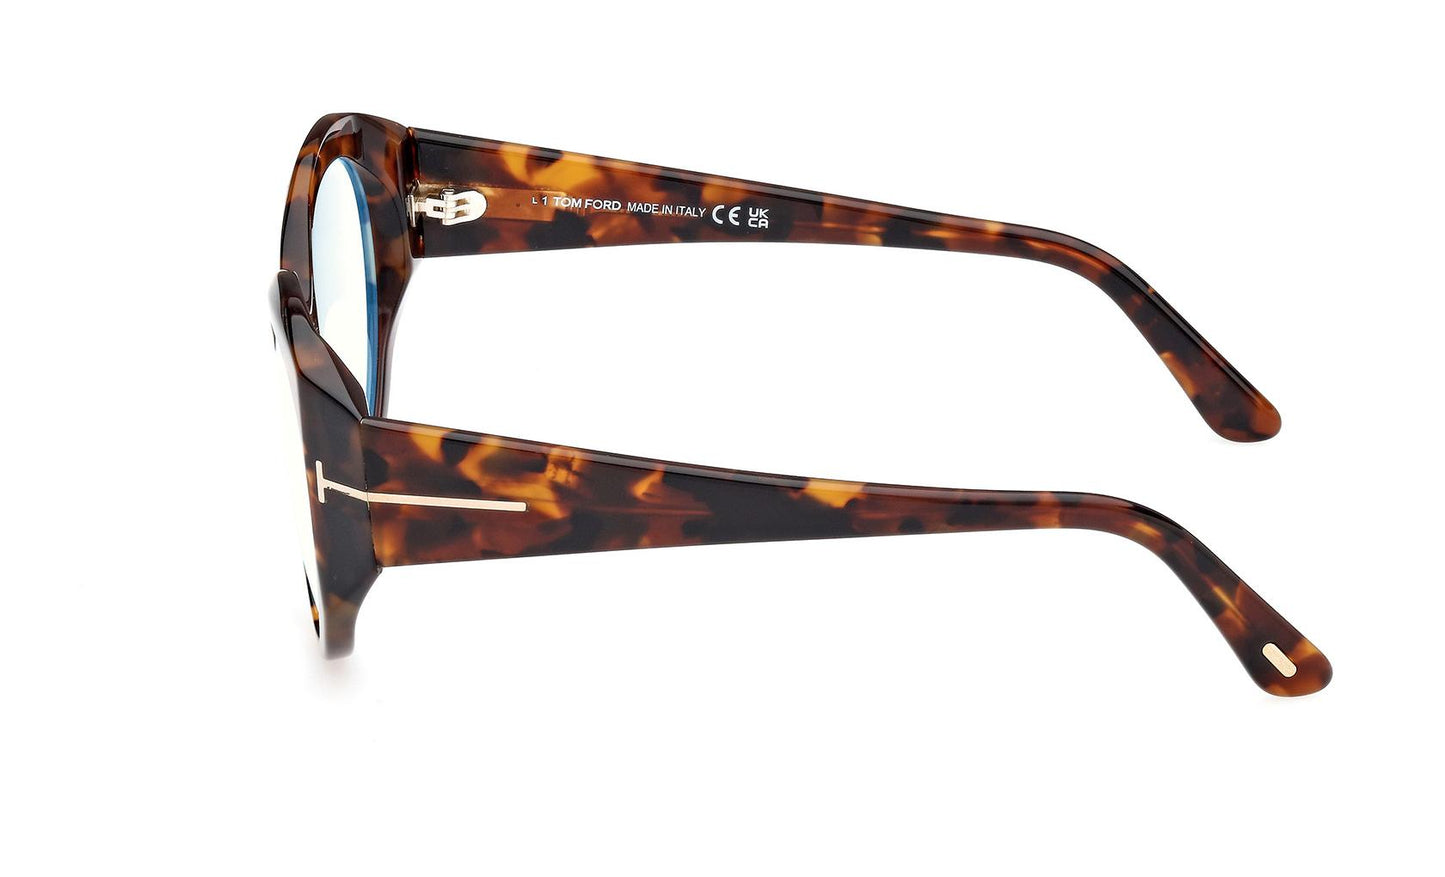 Tom Ford Eyeglasses FT5950/B 052